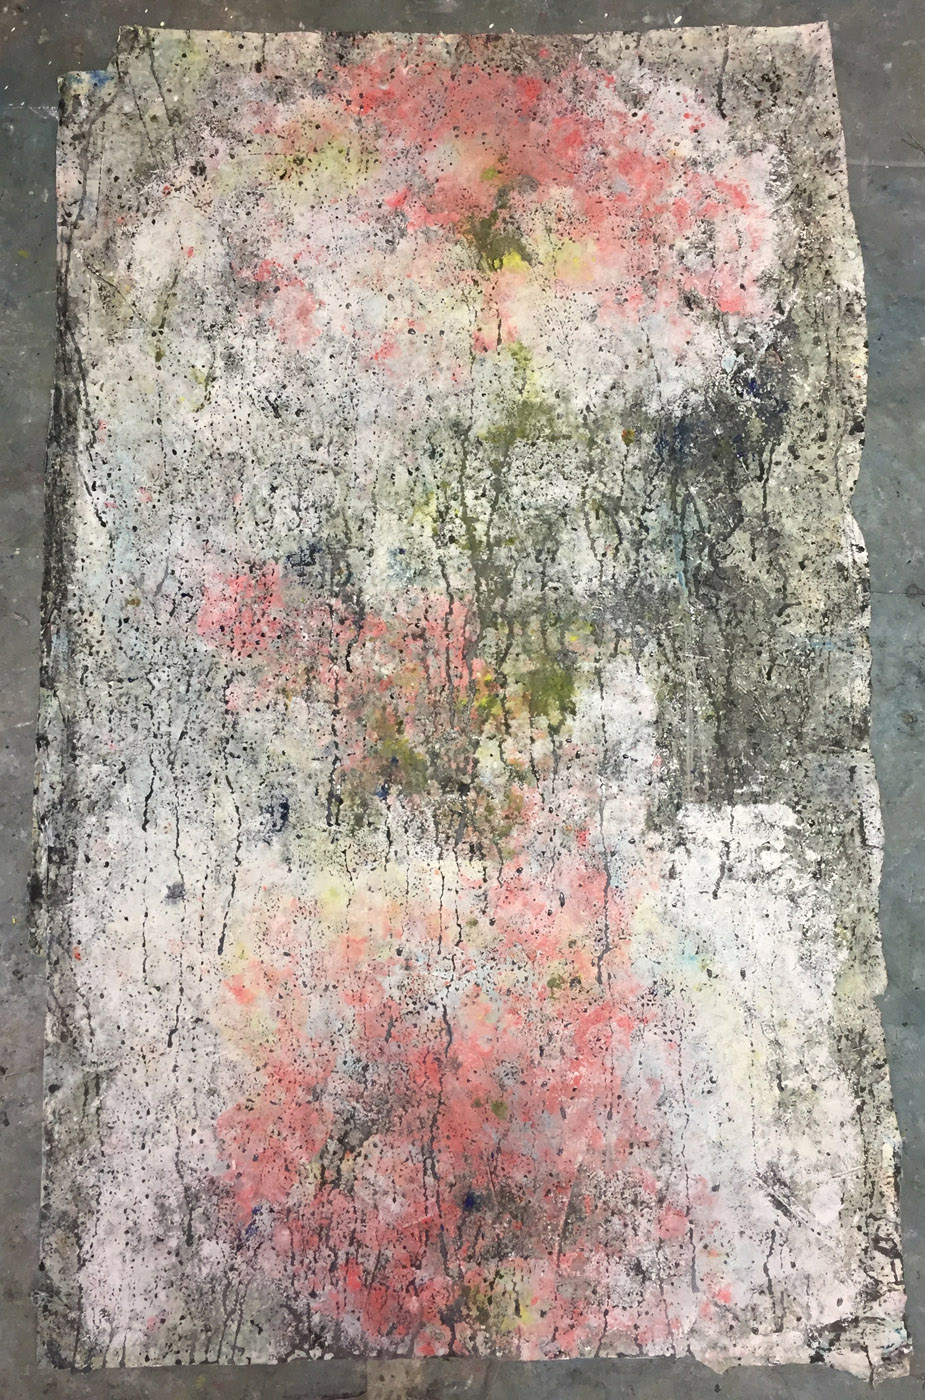 MARC FELD 2019 MEMORY TREE Huile, acrylique et pigment sur papier 100 x 60 b : 65 h cm